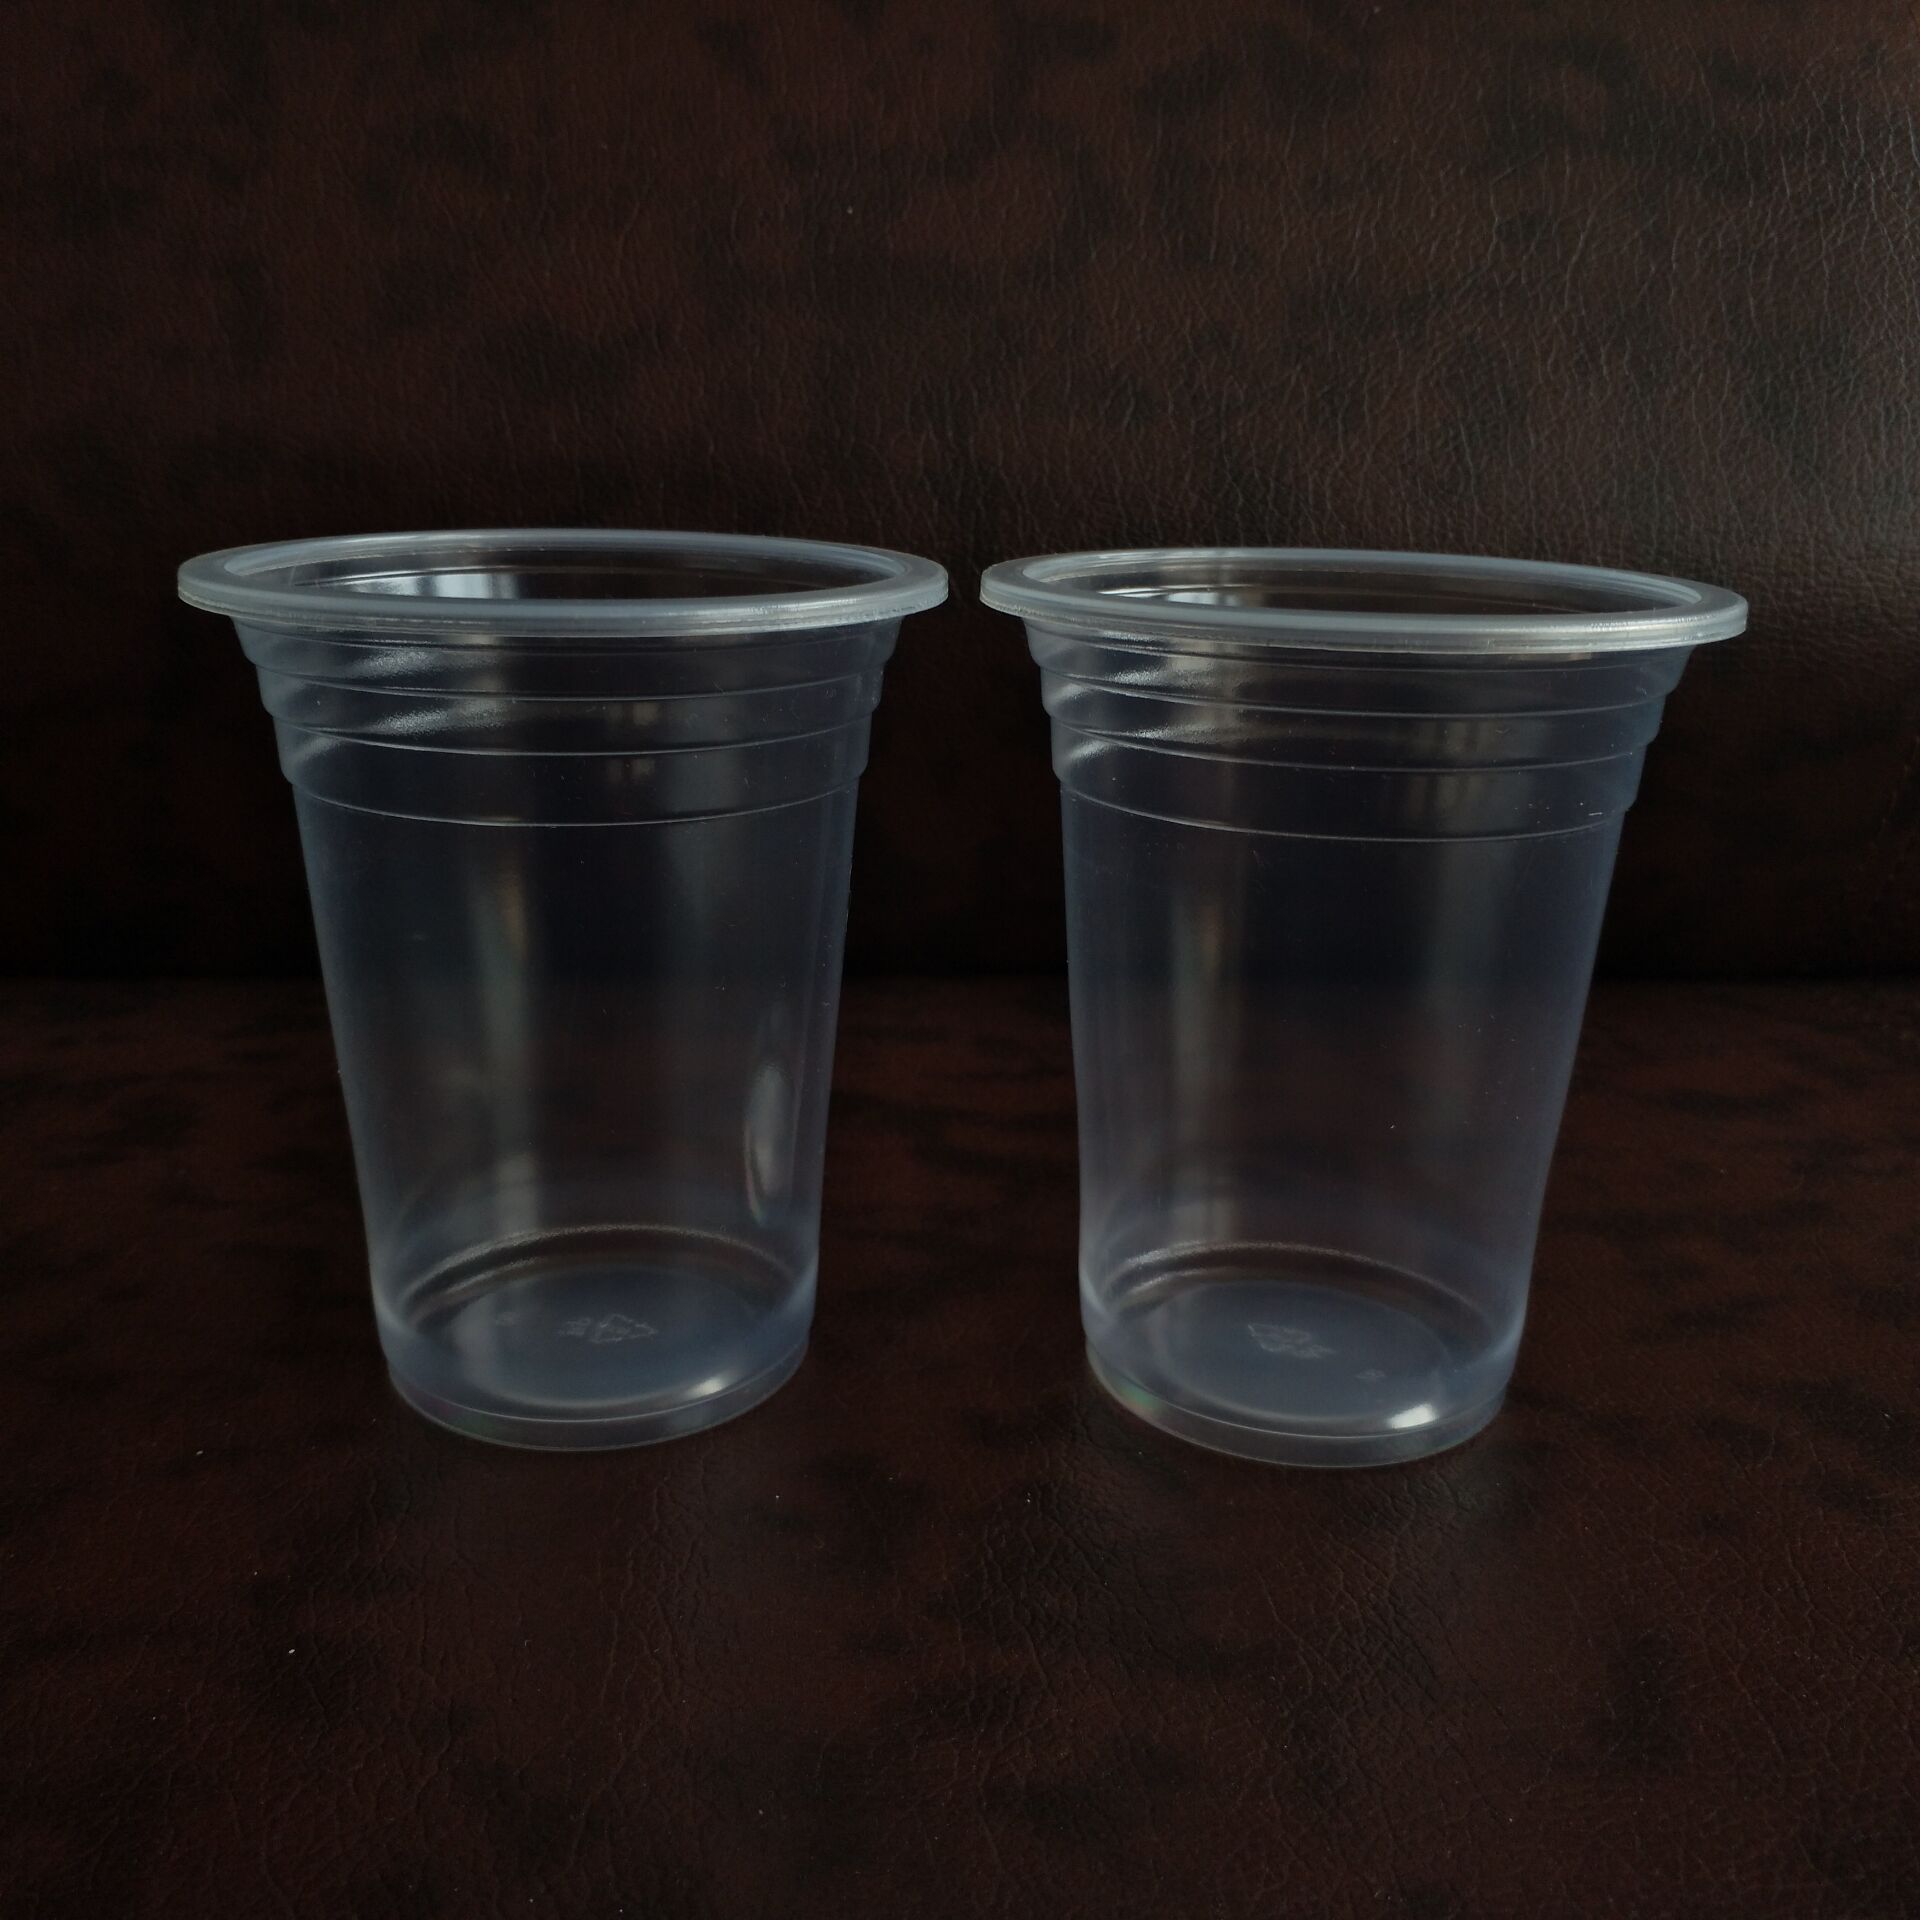 一次性塑料杯喝开水有毒吗 (一次性塑料杯用开水烫有没有毒 一次性塑料杯能不能用开水烫)